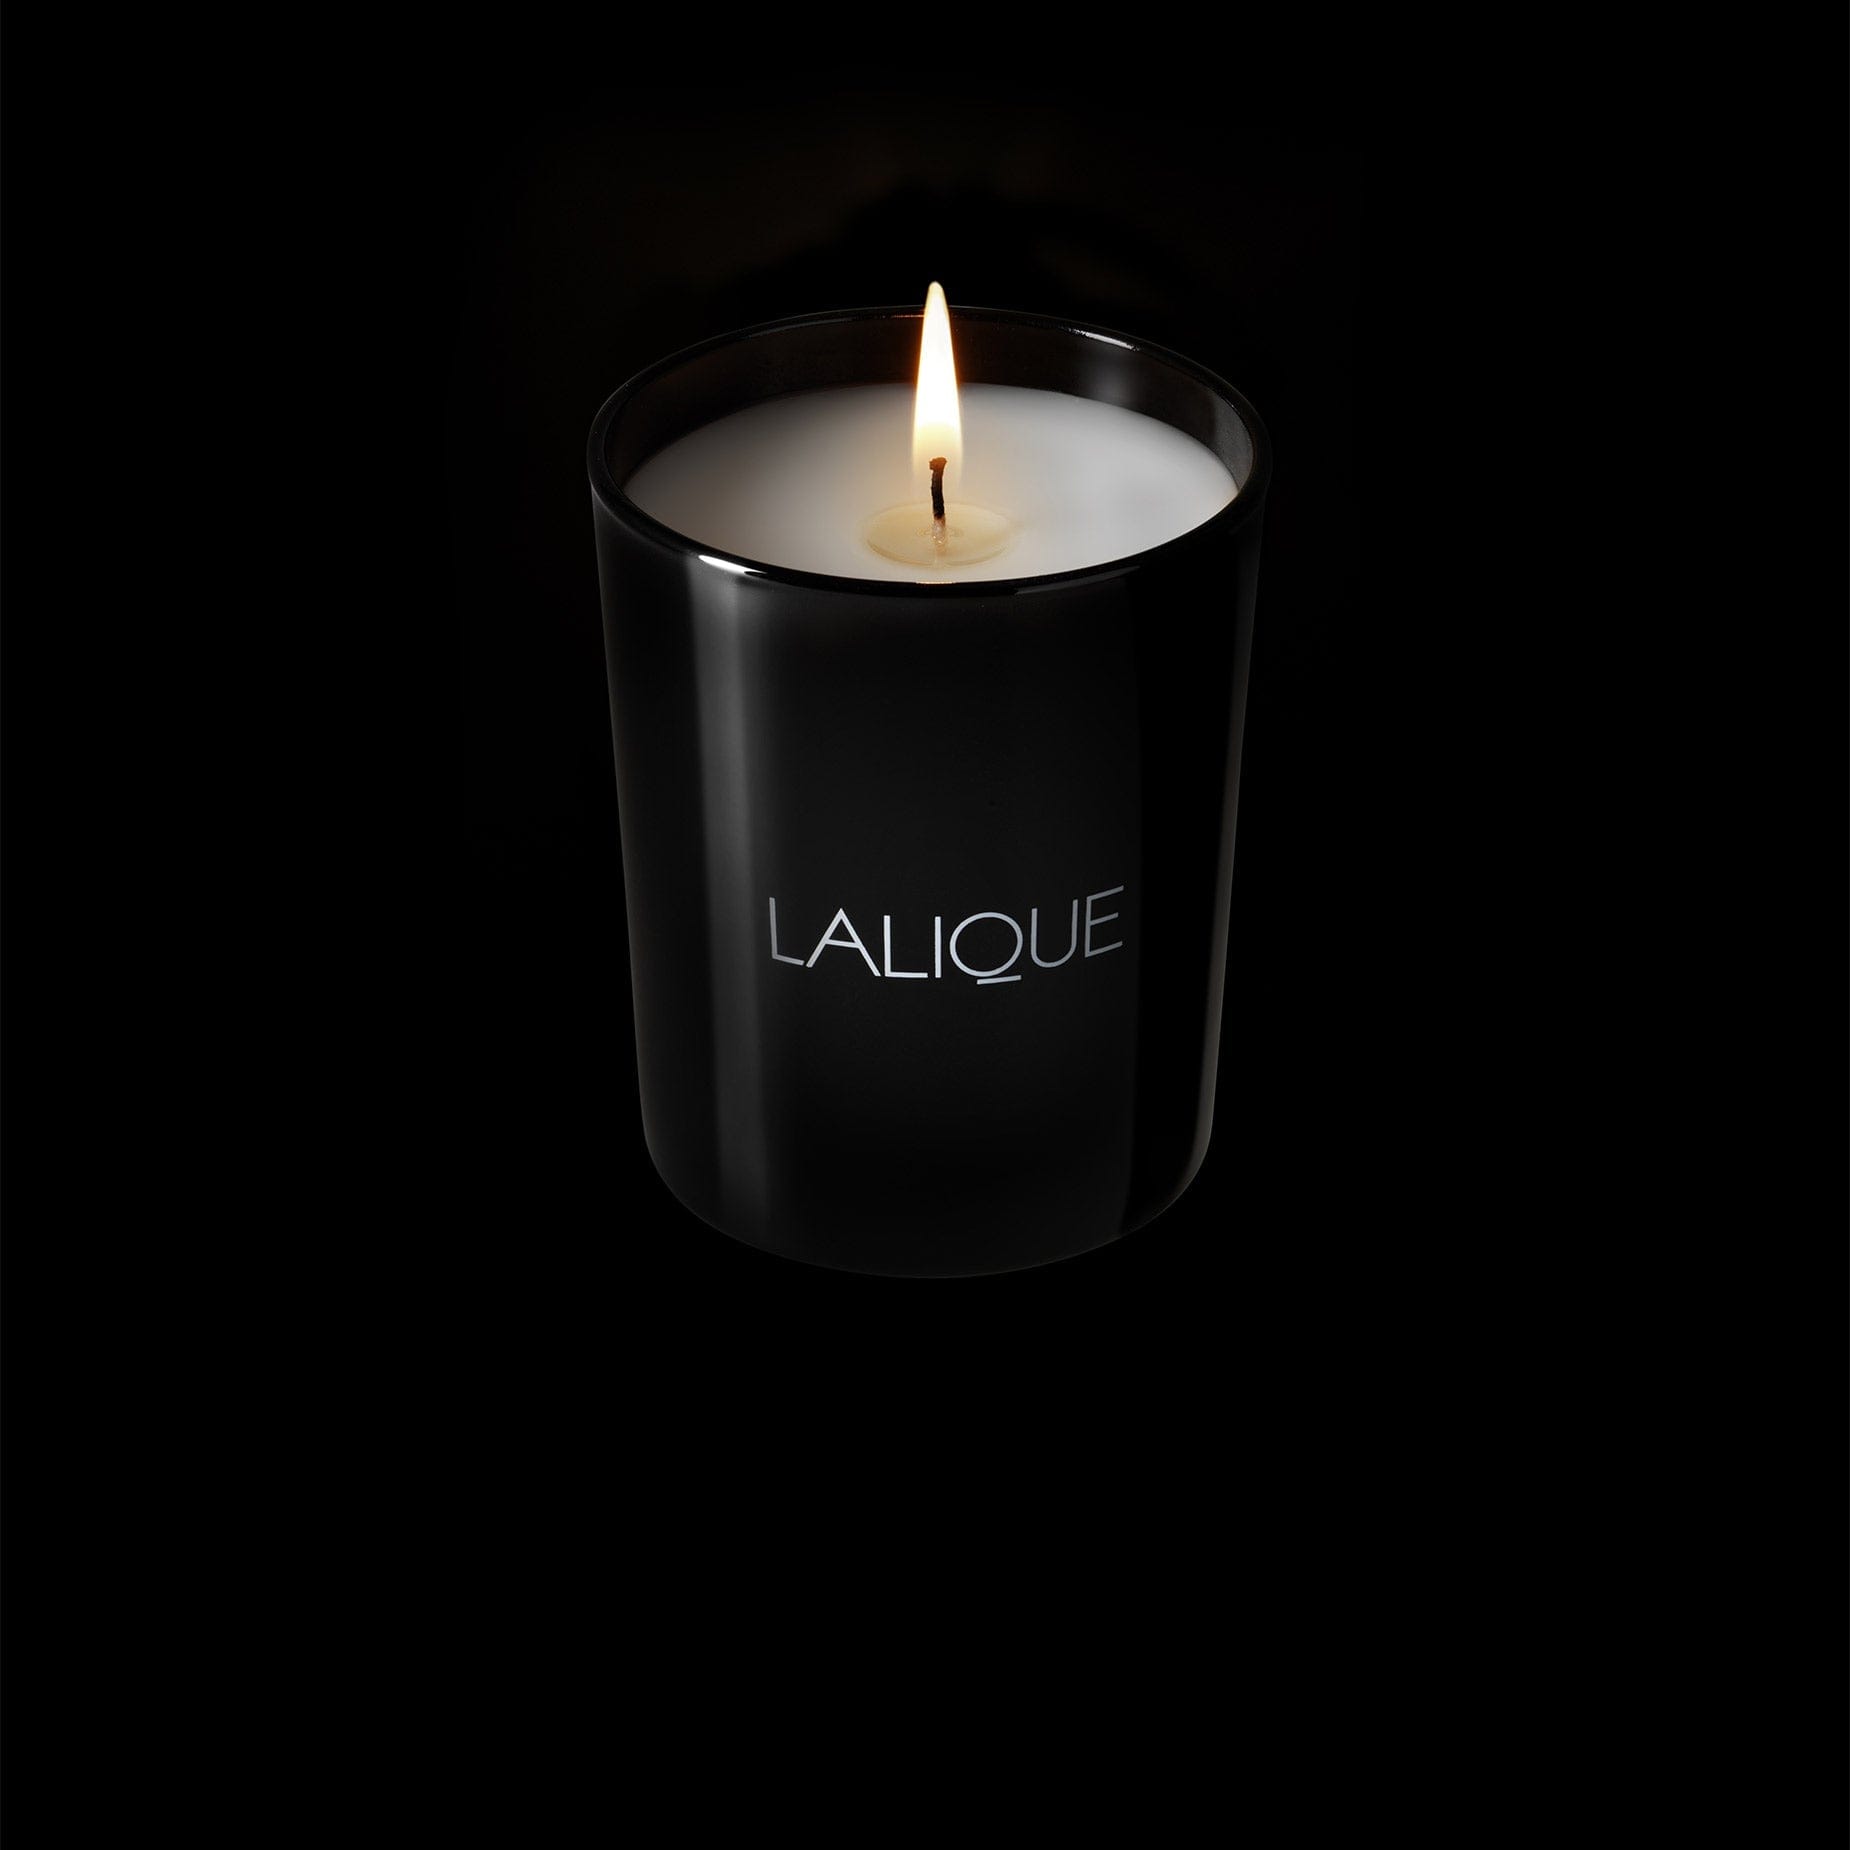 Lalique Peuplier Aspen Etats Unis Scented Candle 190g